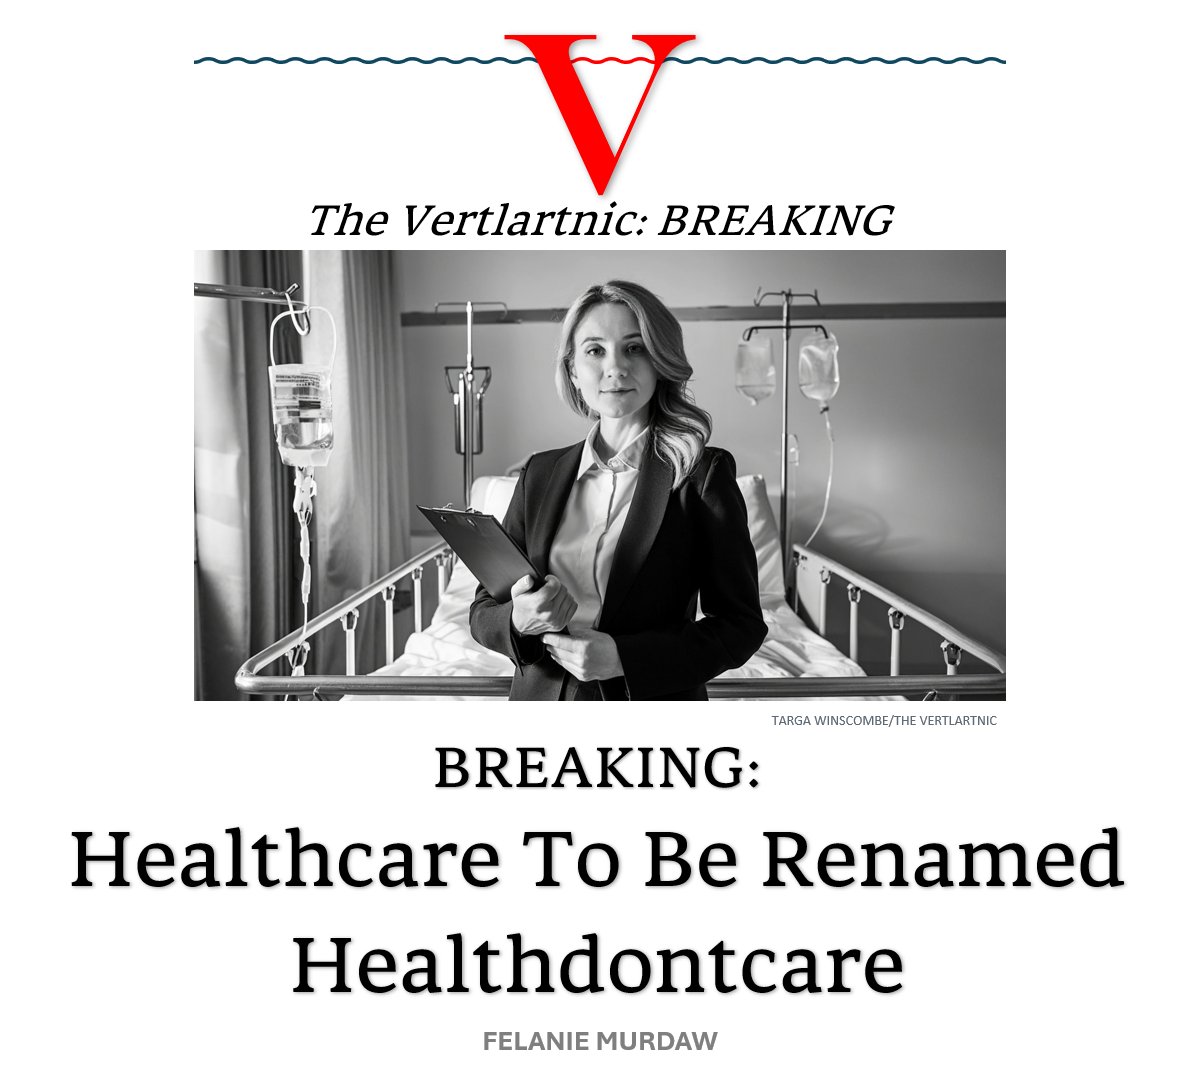 BREAKING:
Healthcare To Be Renamed Healthdontcare